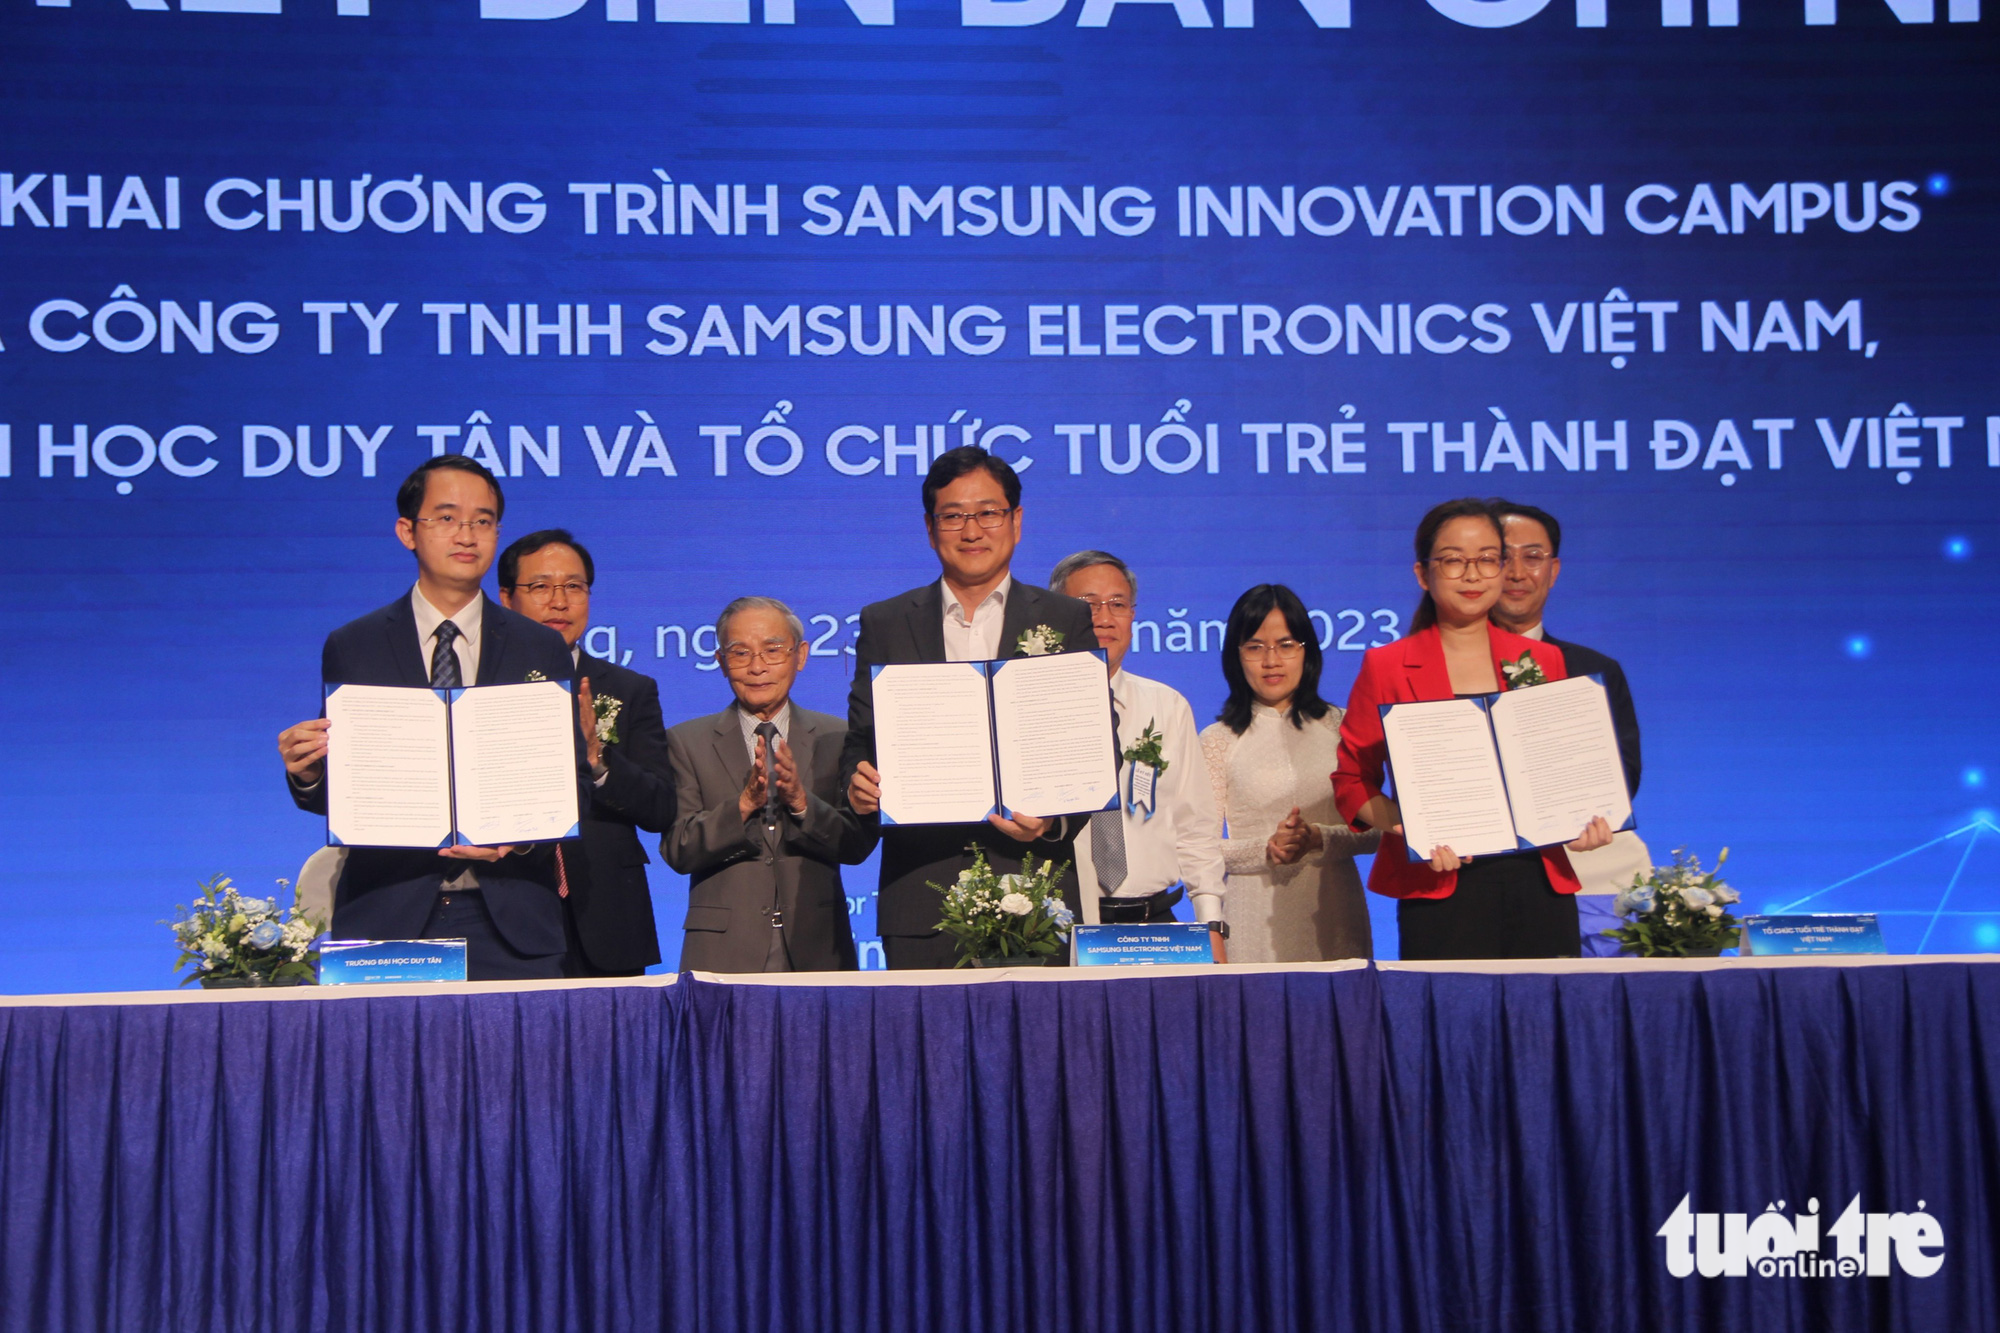 Đại diện Tổ hợp Samsung Việt Nam, Tổ chức Tuổi trẻ thành đạt Việt Nam và Trường đại học Duy Tân ký kết triển khai chương trình Samsung Innovation Campus